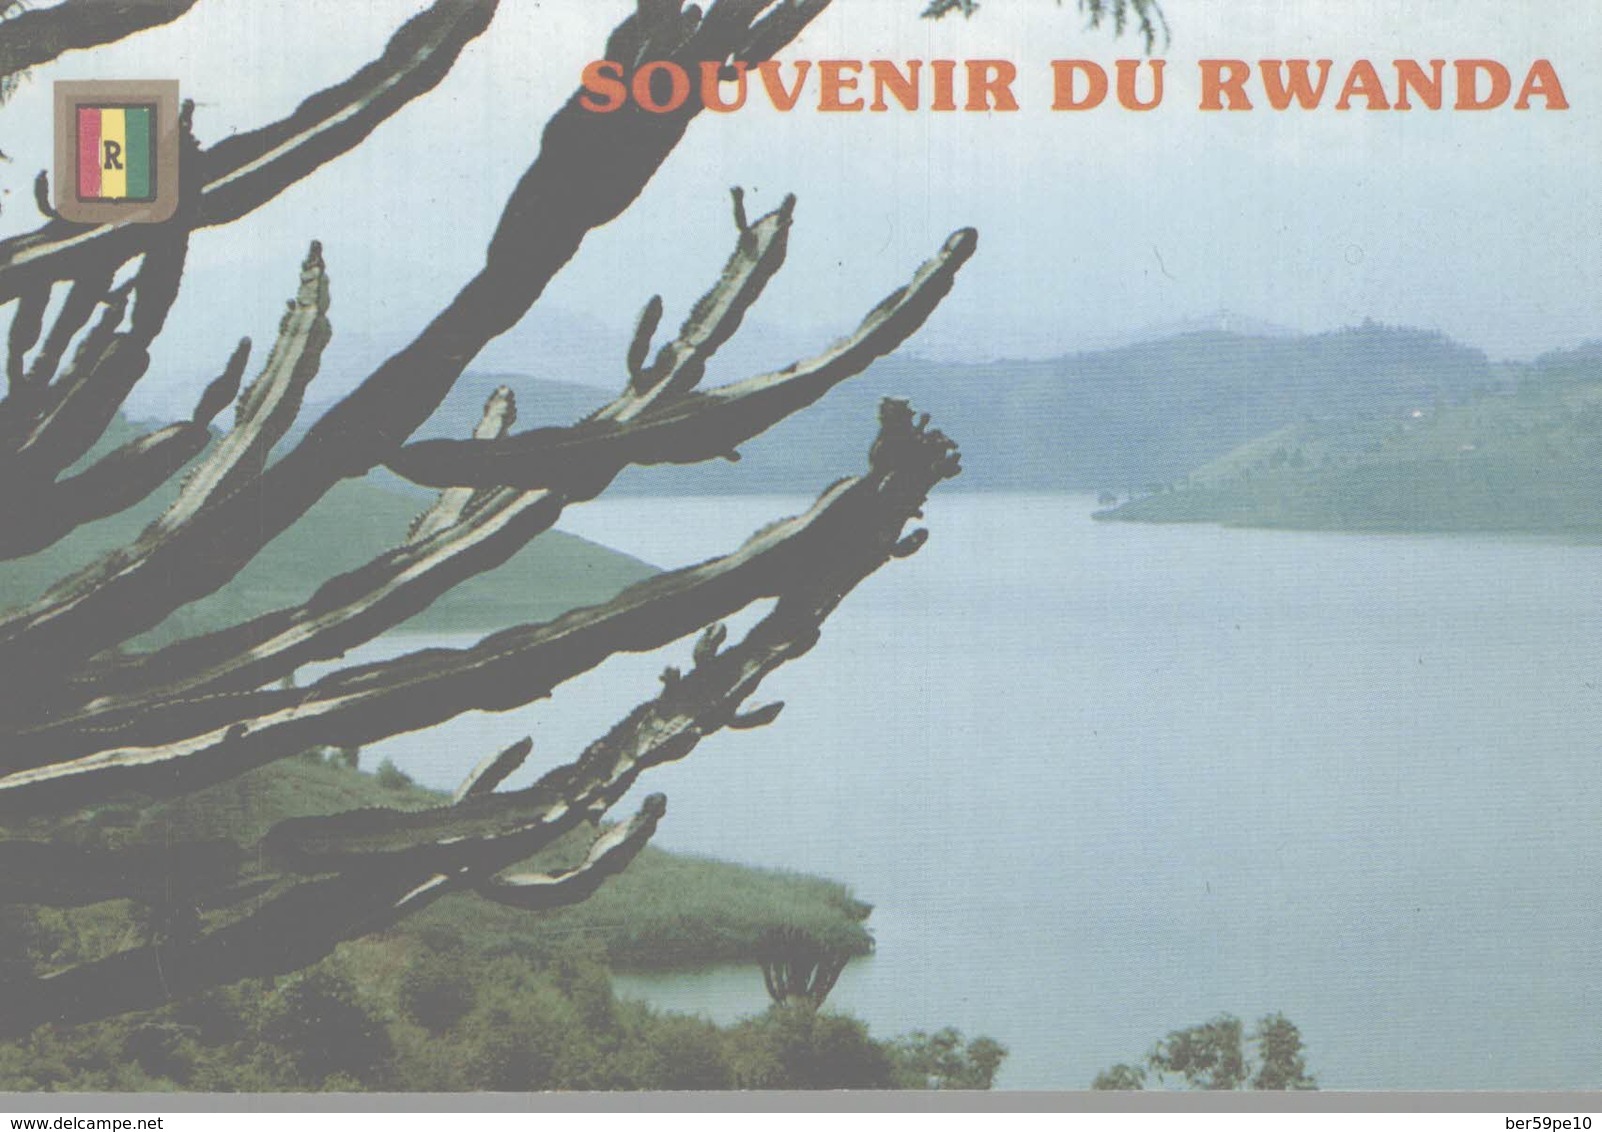 SOUVENIR DU RWANDA - Rwanda